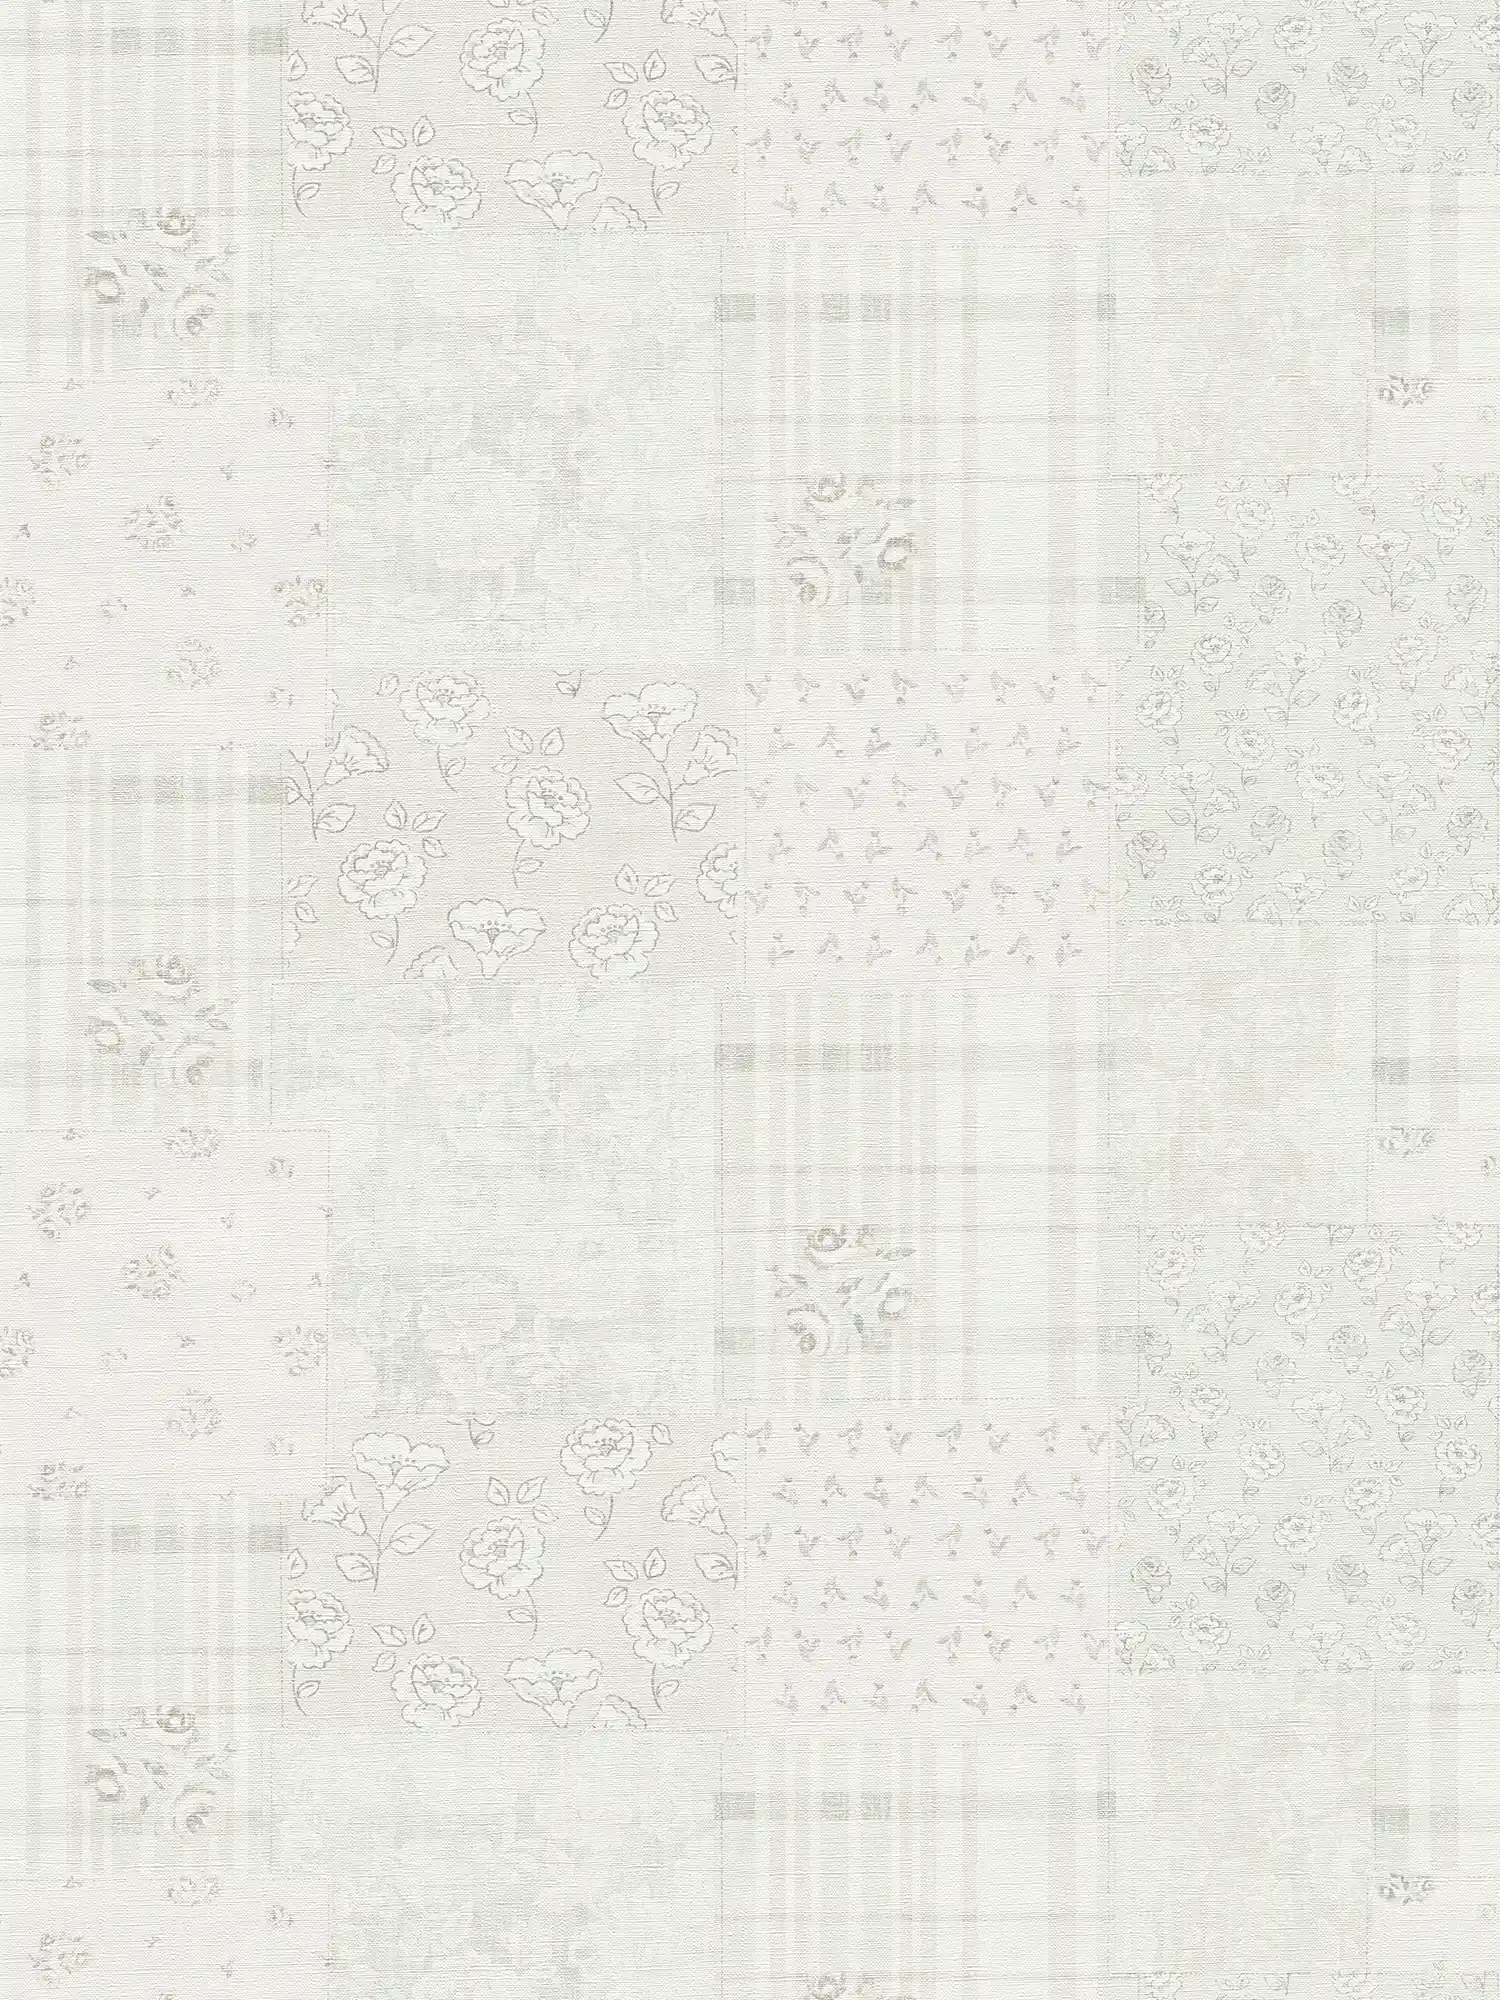 Vliesbehang met bloemenpatroon landelijke stijl - grijs, wit
